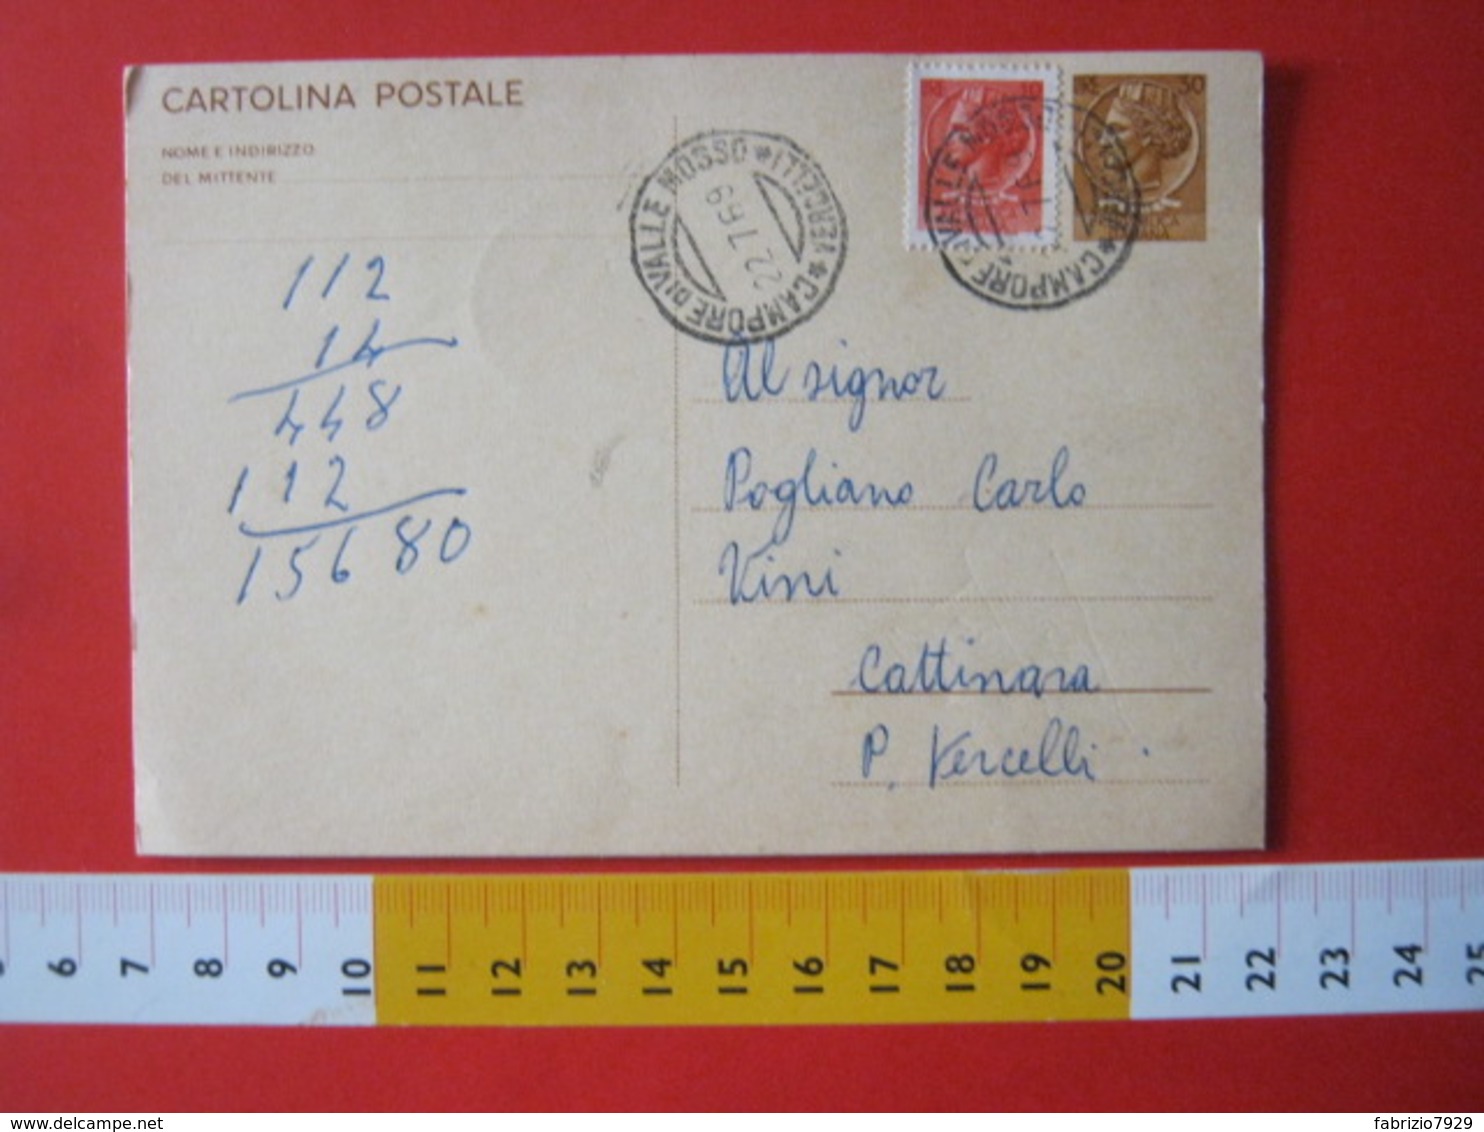 PC.4 ITALIA CARTOLINA POSTALE 1966 SIRACUSANA £ 30 SCRITTA SINISTRA DA CAMPORE DI VALLE MOSSO BIELLA VERCELLI + FR. 1969 - Interi Postali